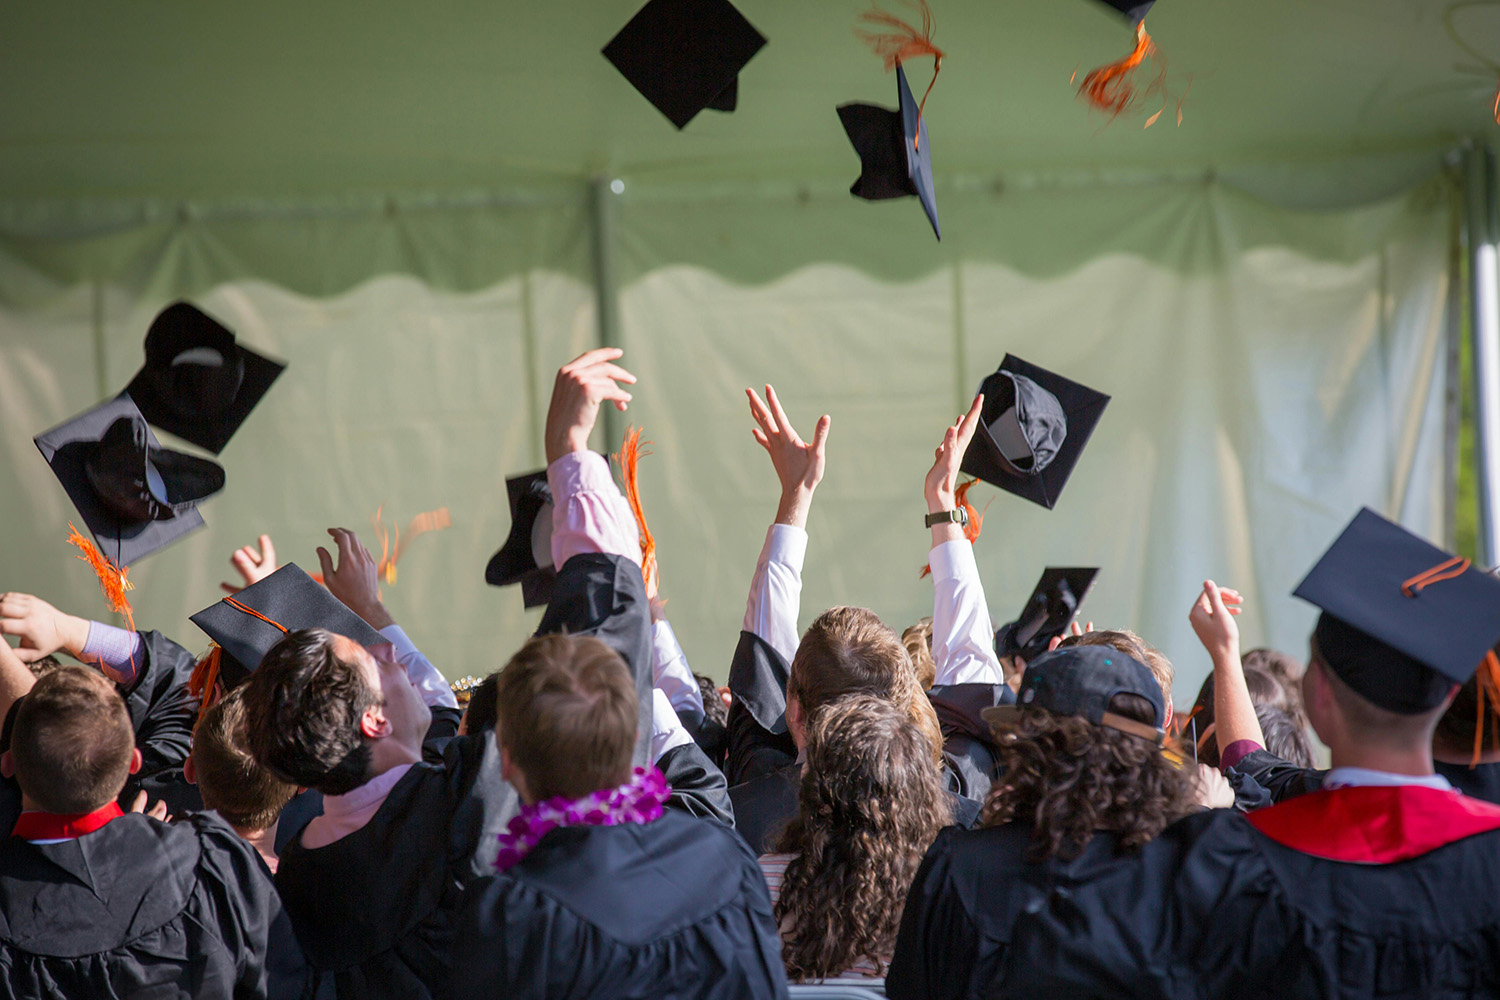 Stock image of graduates celebrating 